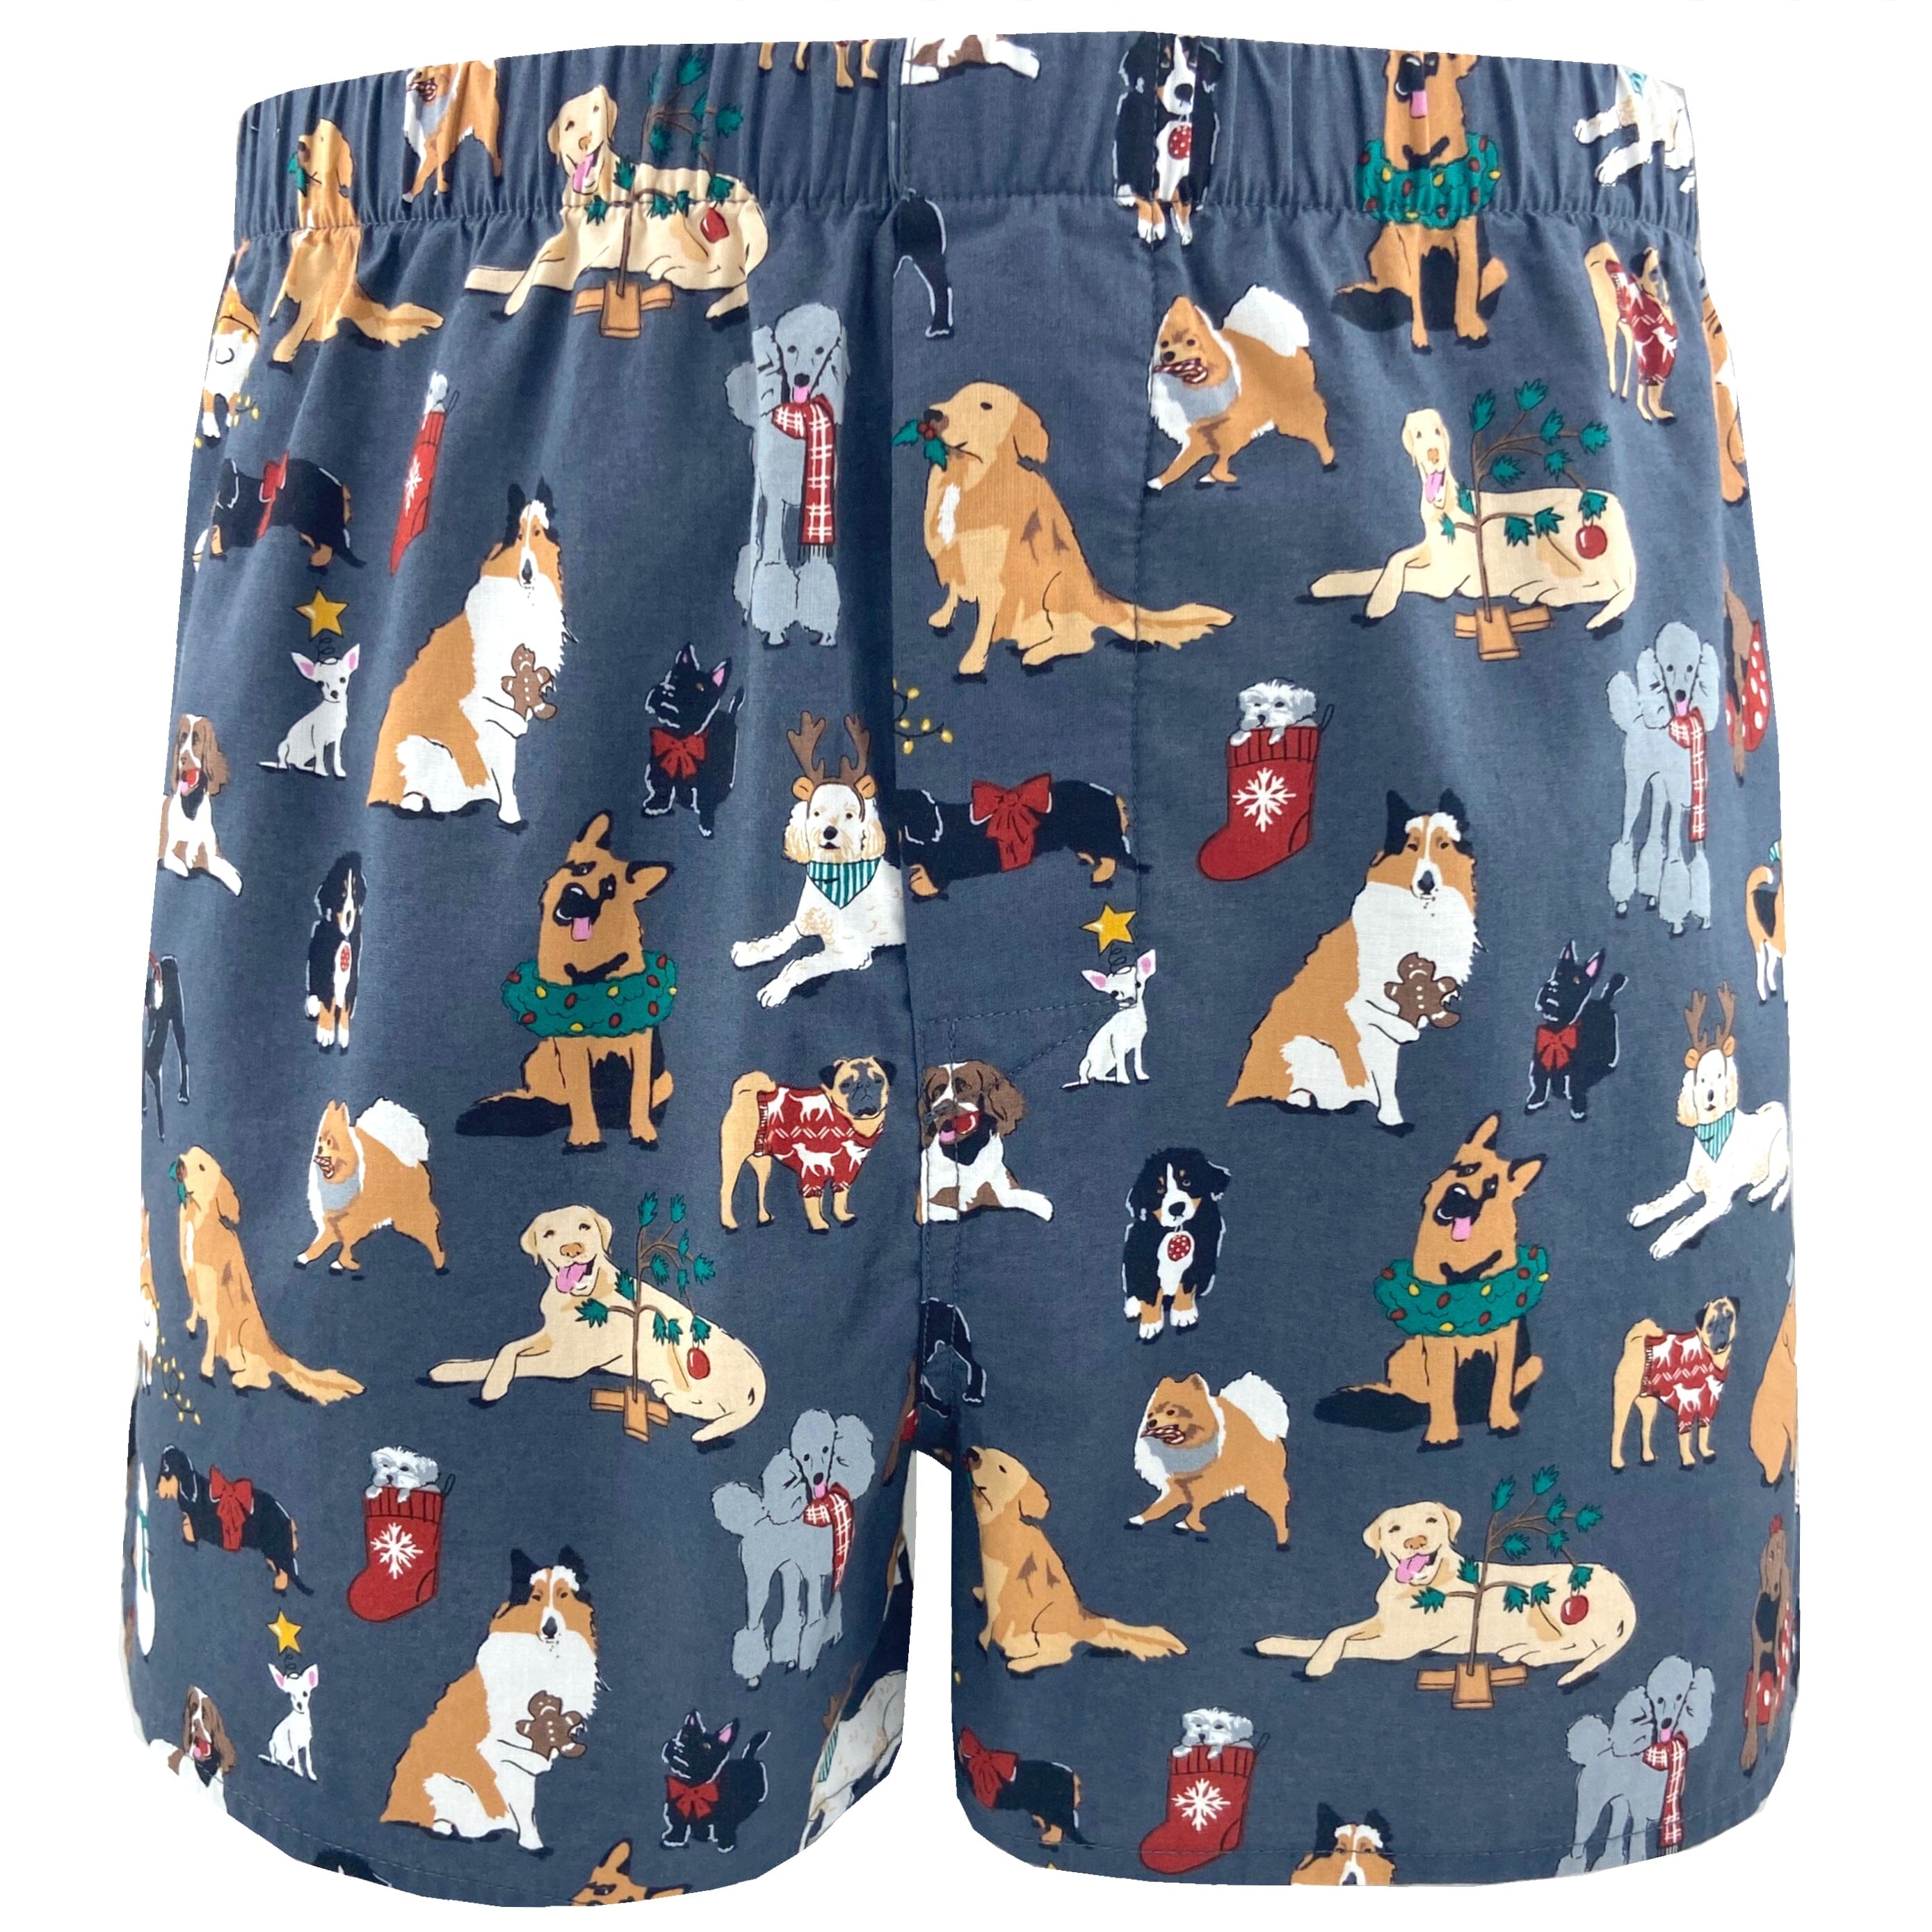 Festive Christmas Boxers For Men. Buy Men's Dog Patterned Boxer Shorts